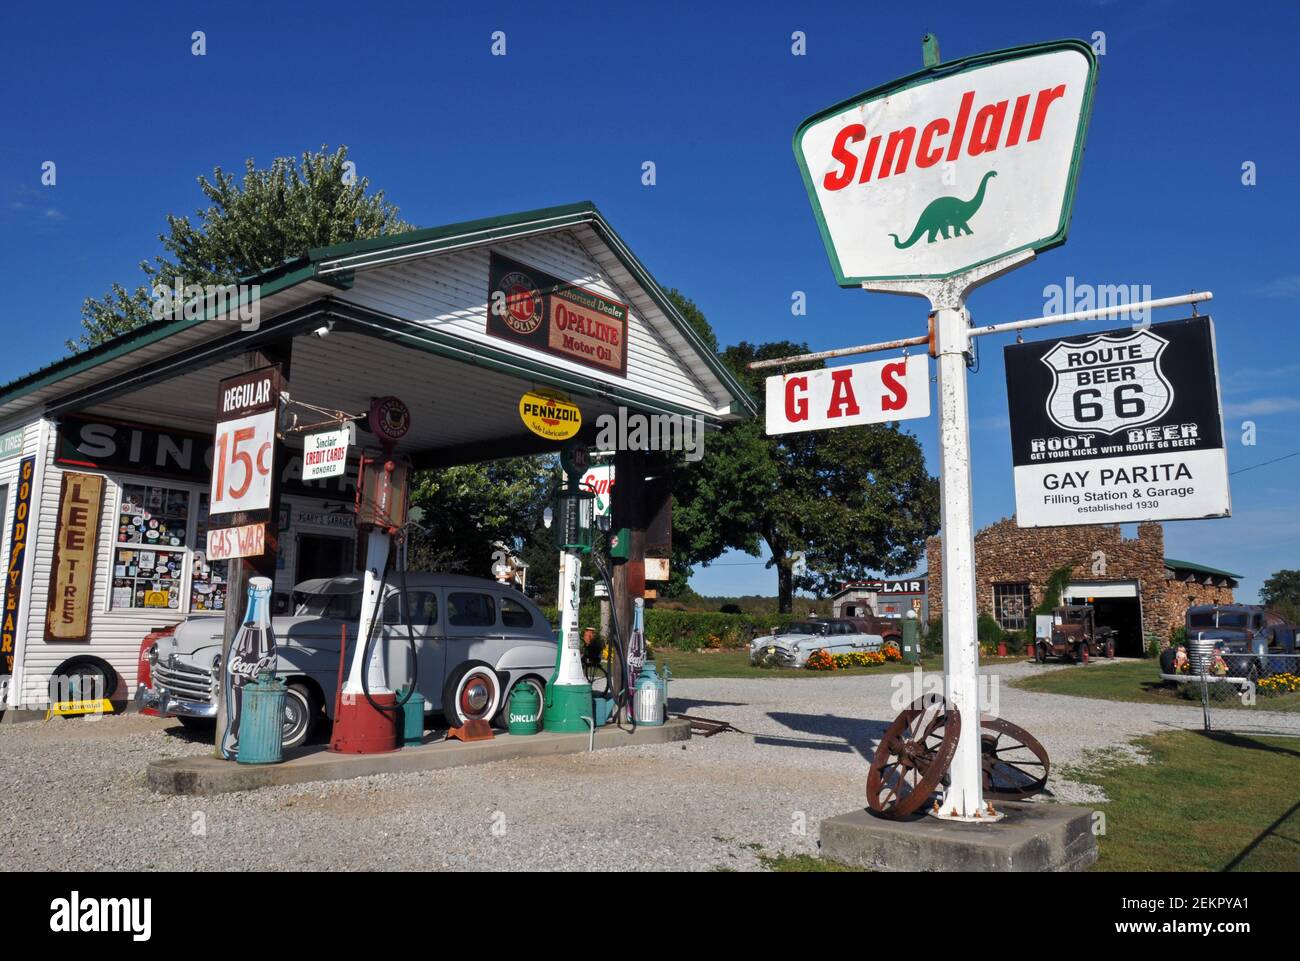 Die Gay Parita Tankstelle und Garage ist ein Wahrzeichen der Route 66 und eine Attraktion am Straßenrand im kleinen Weiler Paris Springs Junction, Missouri. Stockfoto